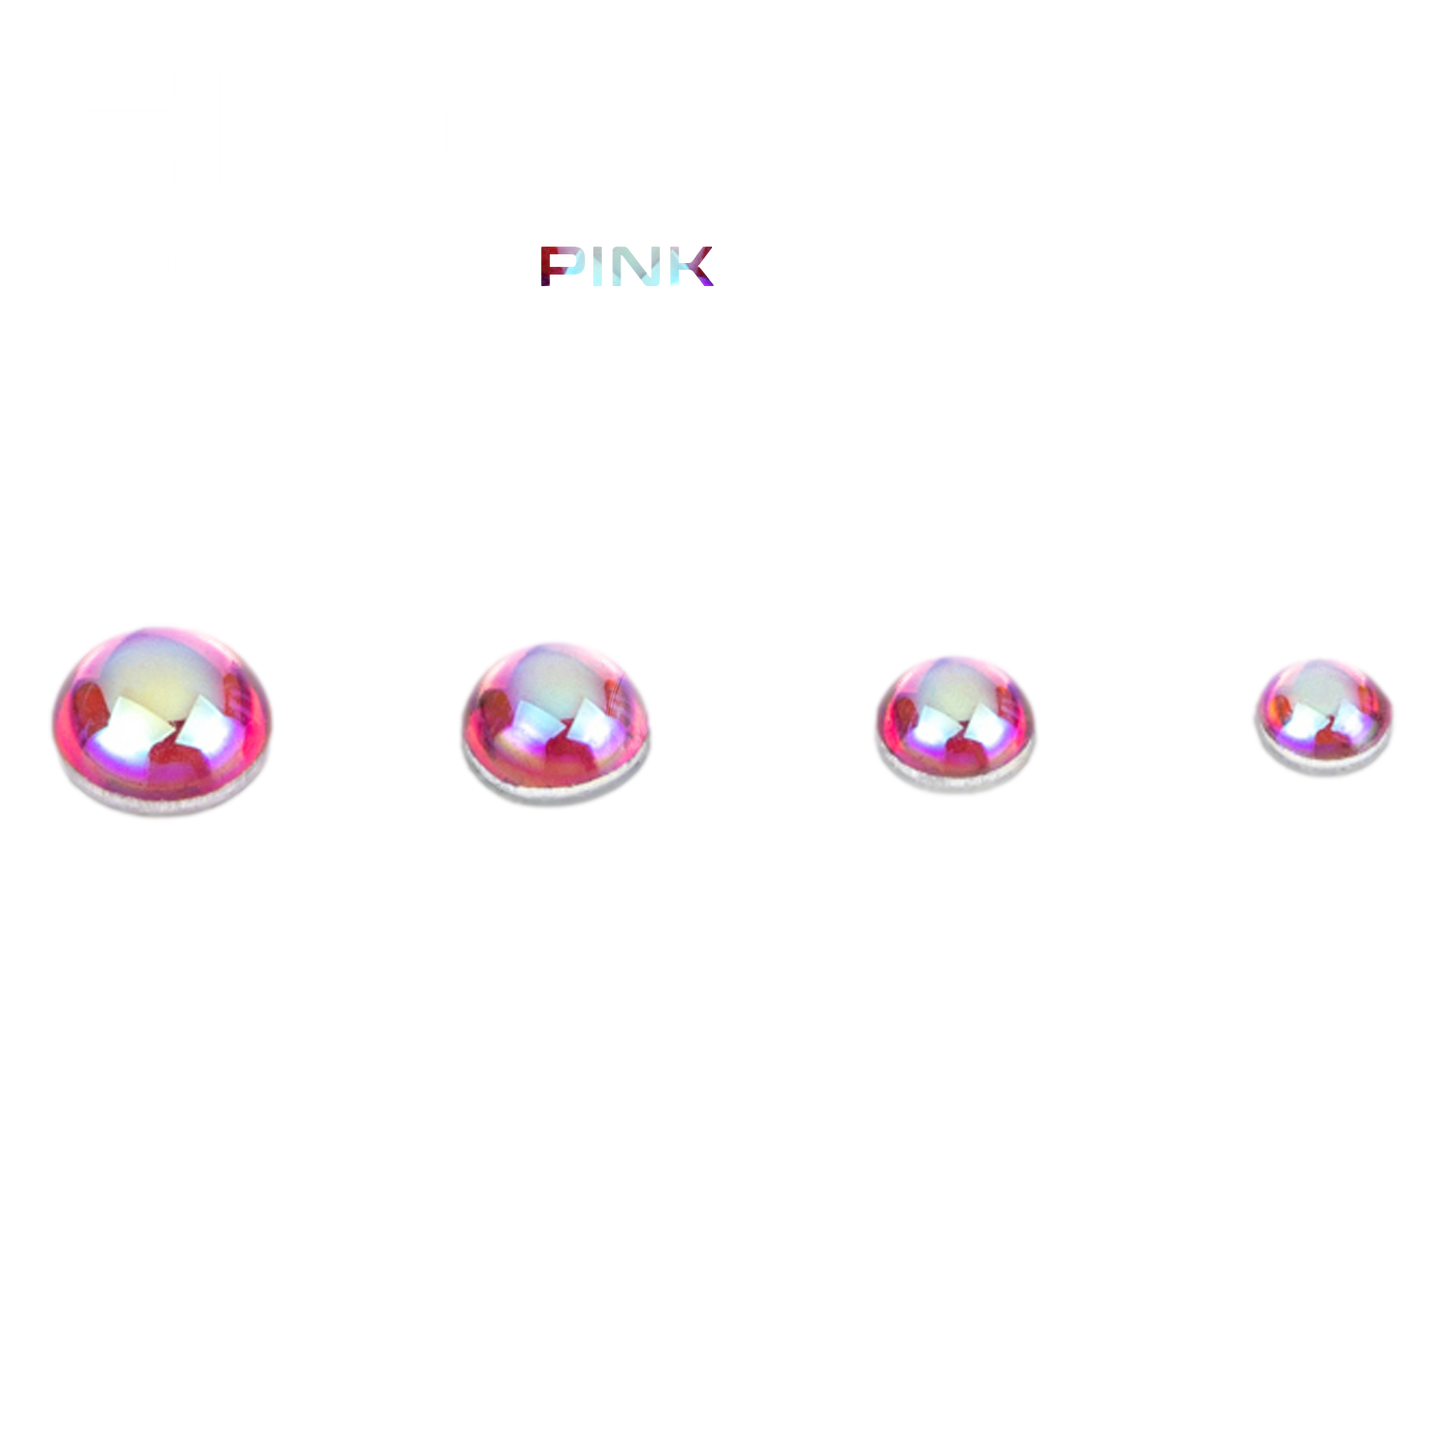 VC Dome 3 [Pink | Medium] - ShokuninGunpla